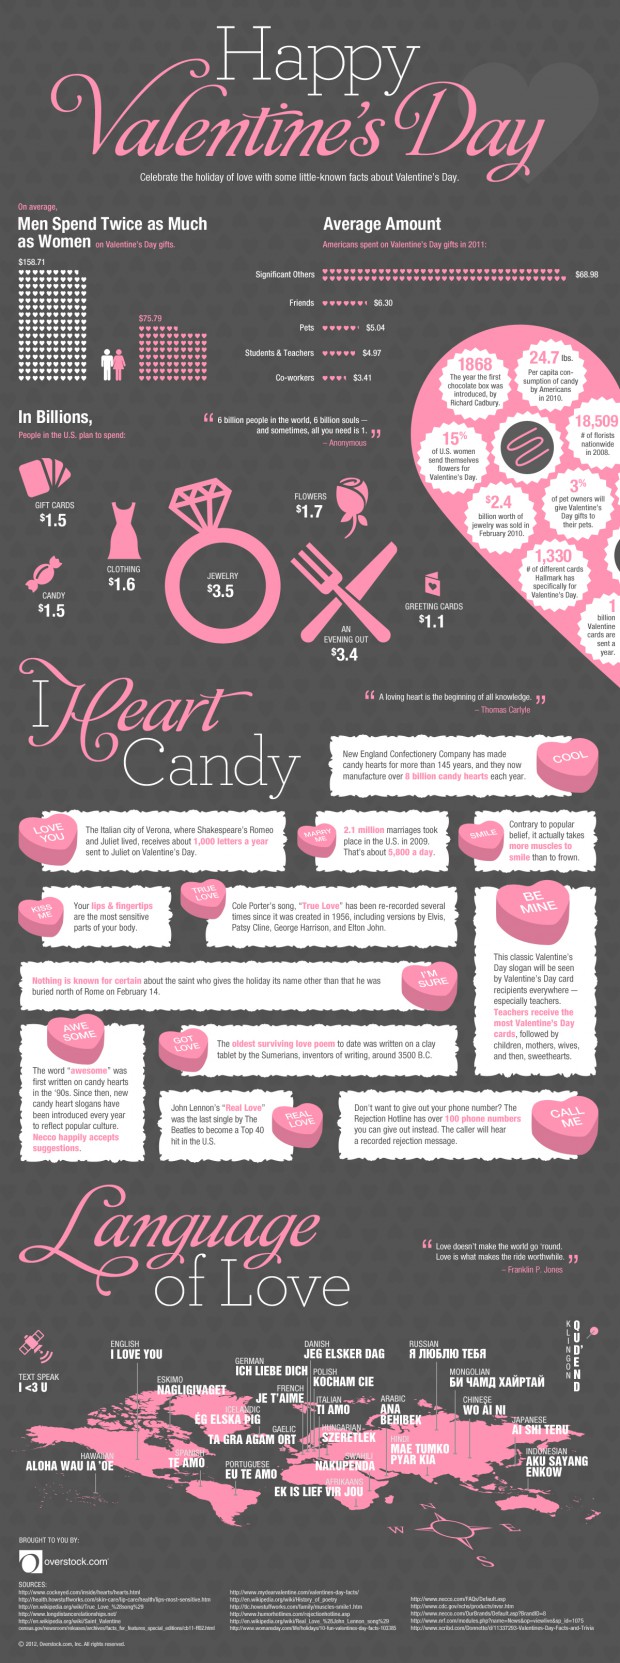 celebrate-love-a-valentines-day-infographic_502914e7229c7